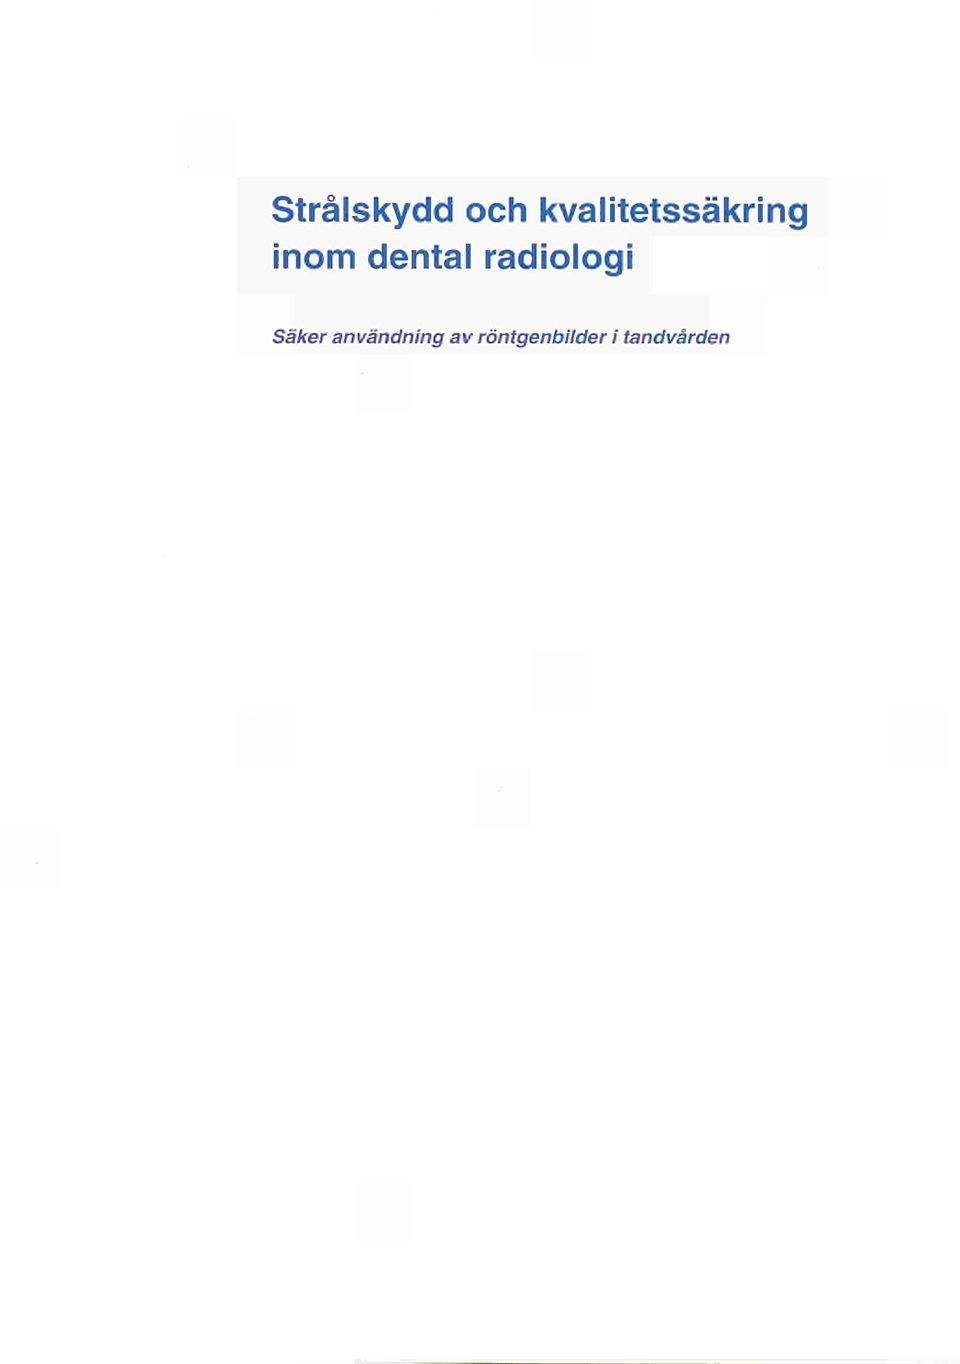 dental radiologi Säker